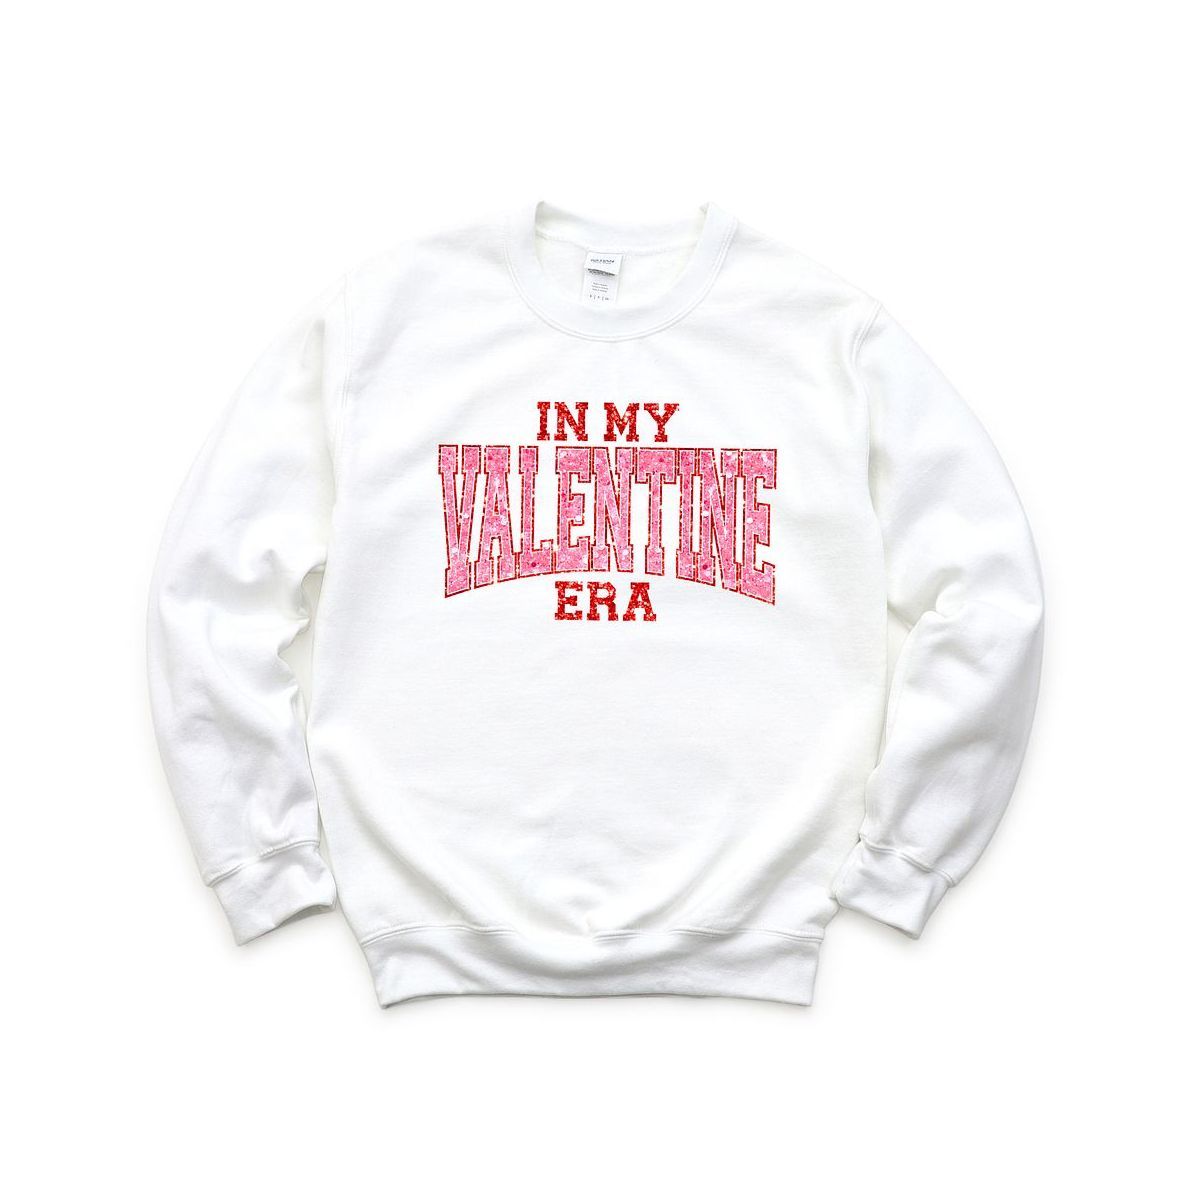 Simply Sage Market Women's Graphic Sweatshirt In My Valentine Era | Target